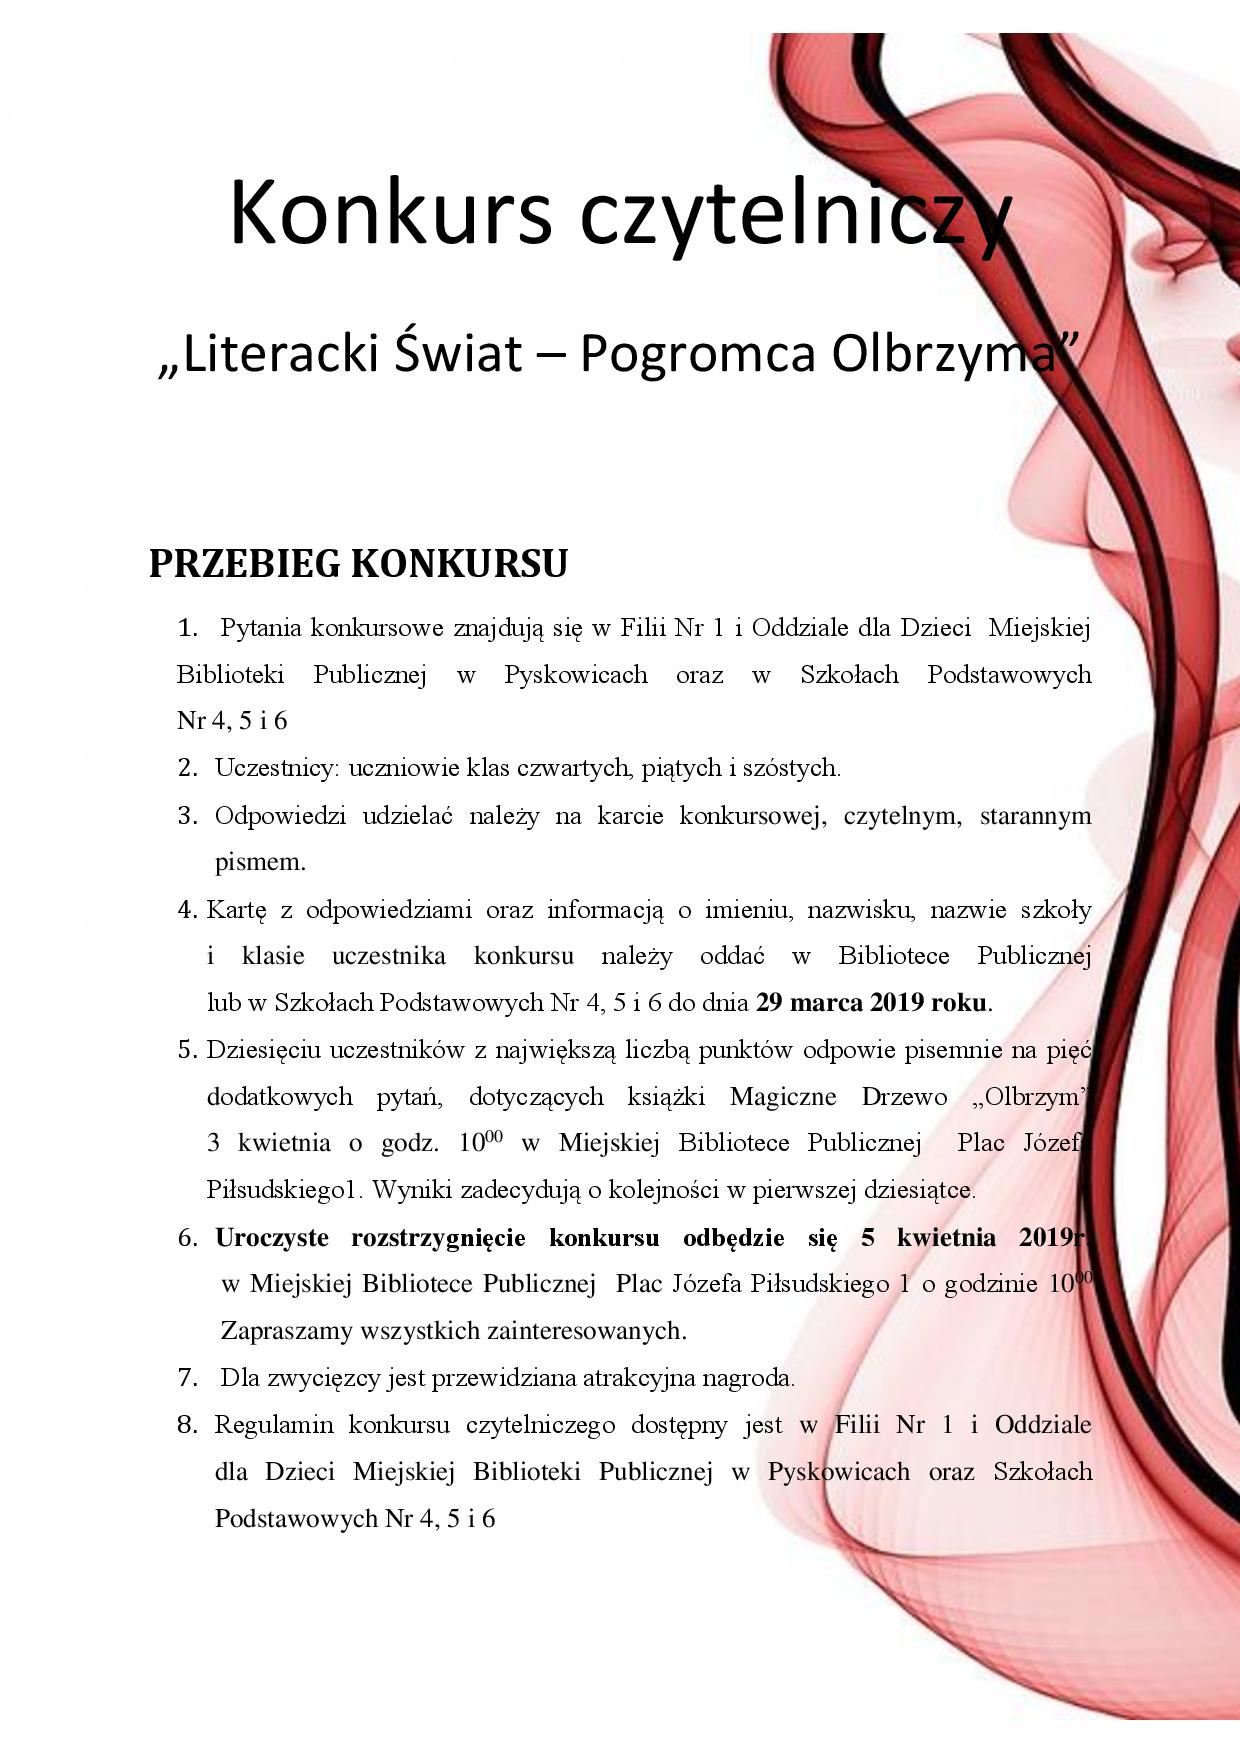 Plakat Konkurs czytelniczy "Literacki Świat - Pogromca Olbrzyma"